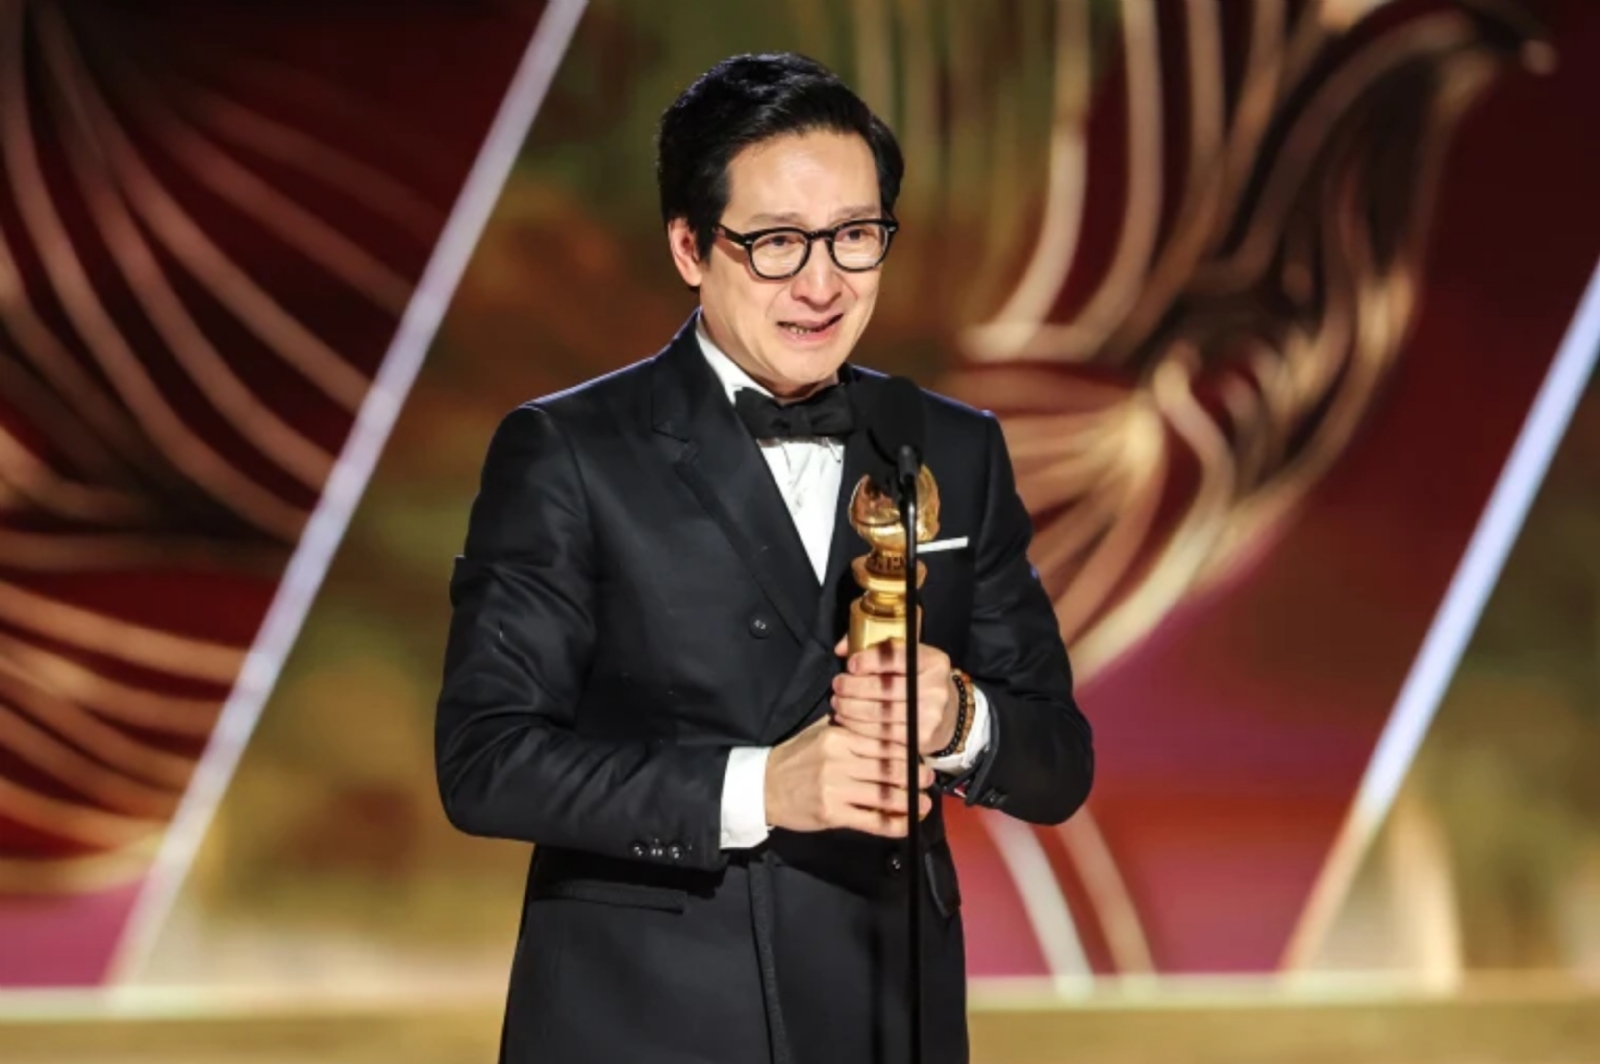 Ke Huy Quan gana el premio Oscar 2023 a Mejor Actor de Reparto